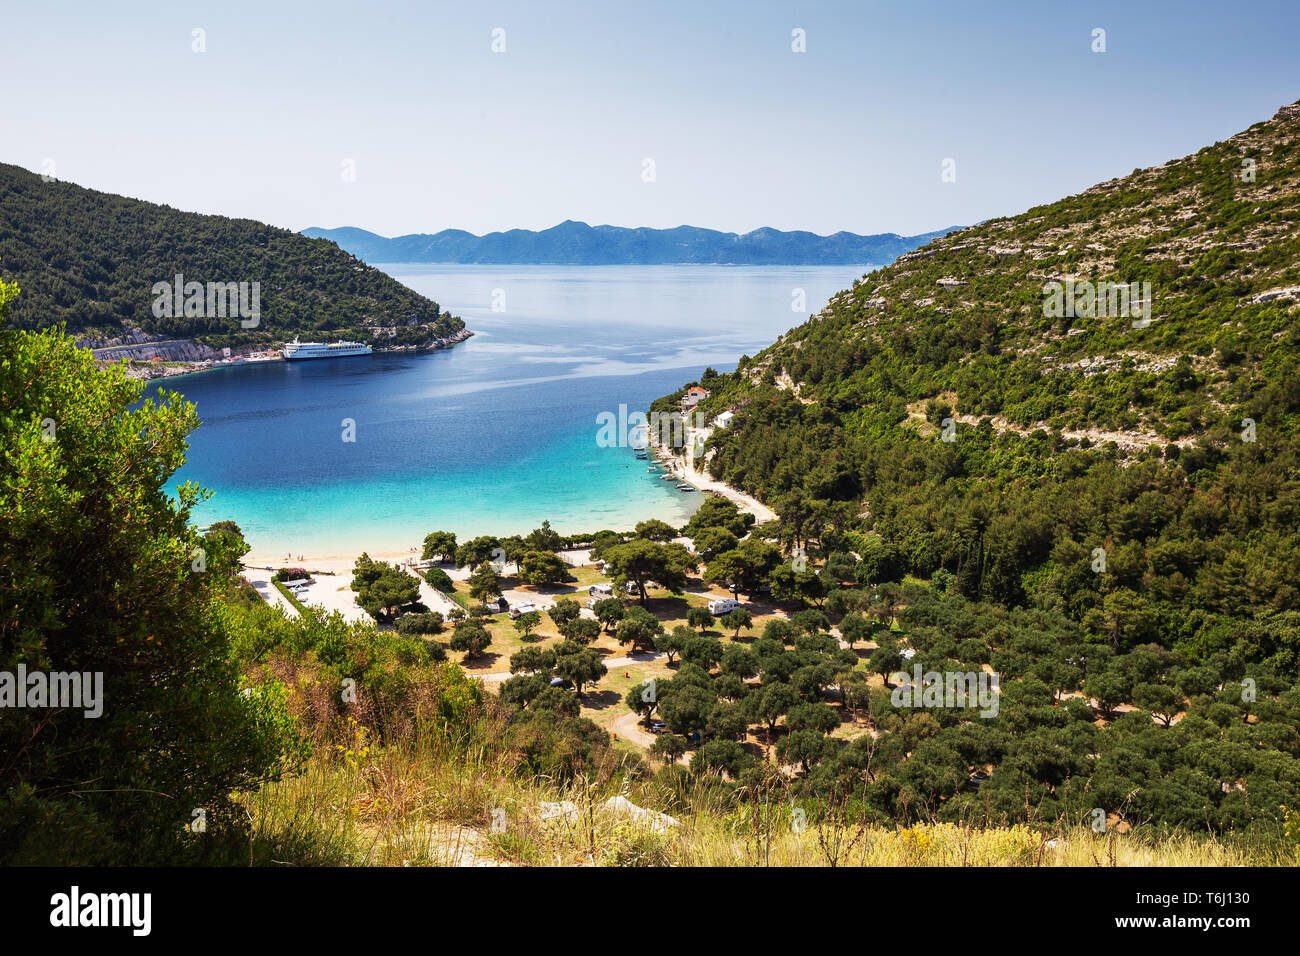 Baia di Prapratno, porto dei traghetti e campeggio. Croazia. Europa. Foto Stock